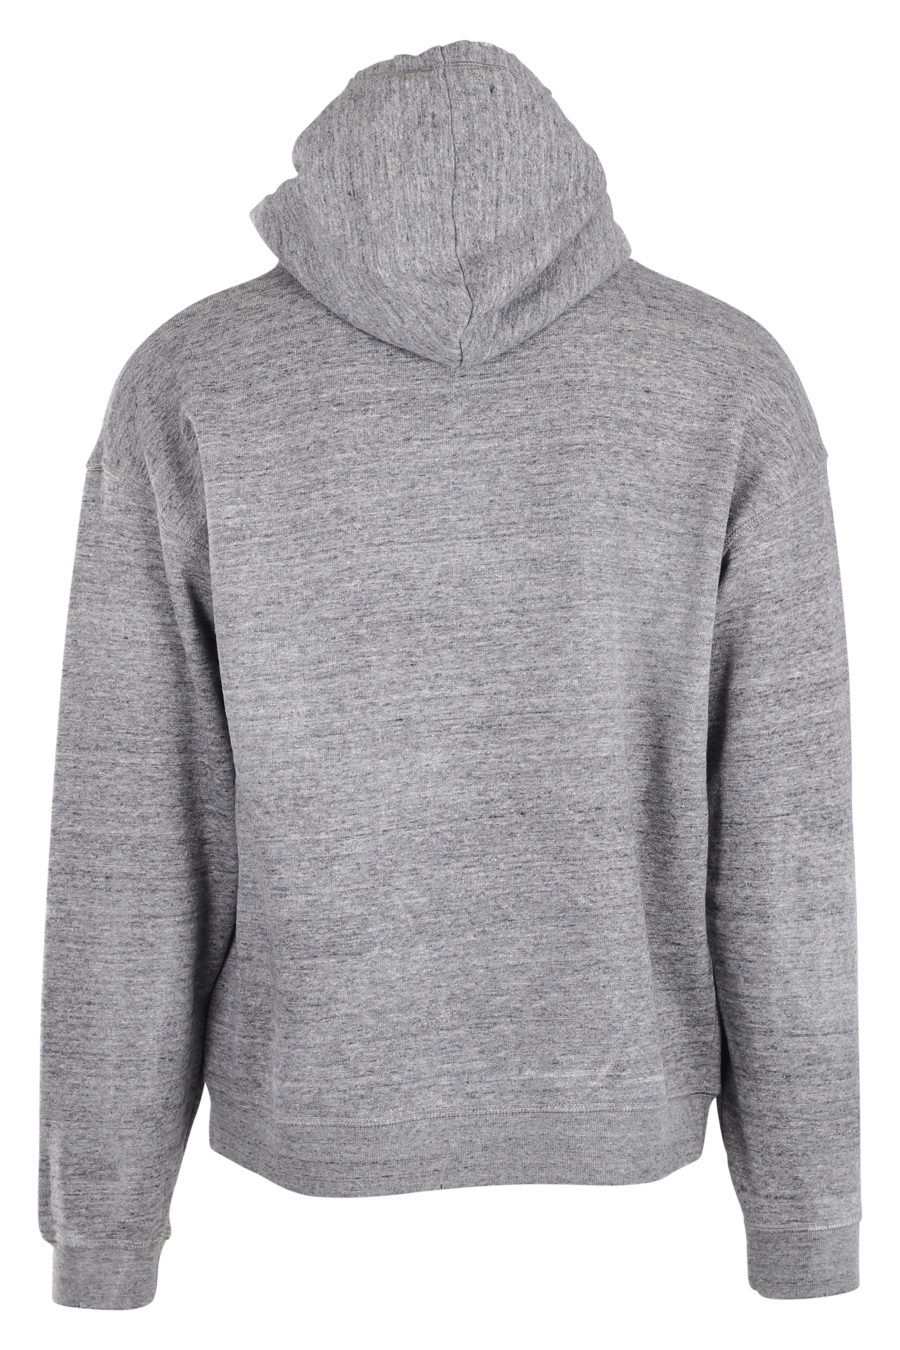 Grey hooded sweatshirt with white "phys ed 64" logo - IMG 9954